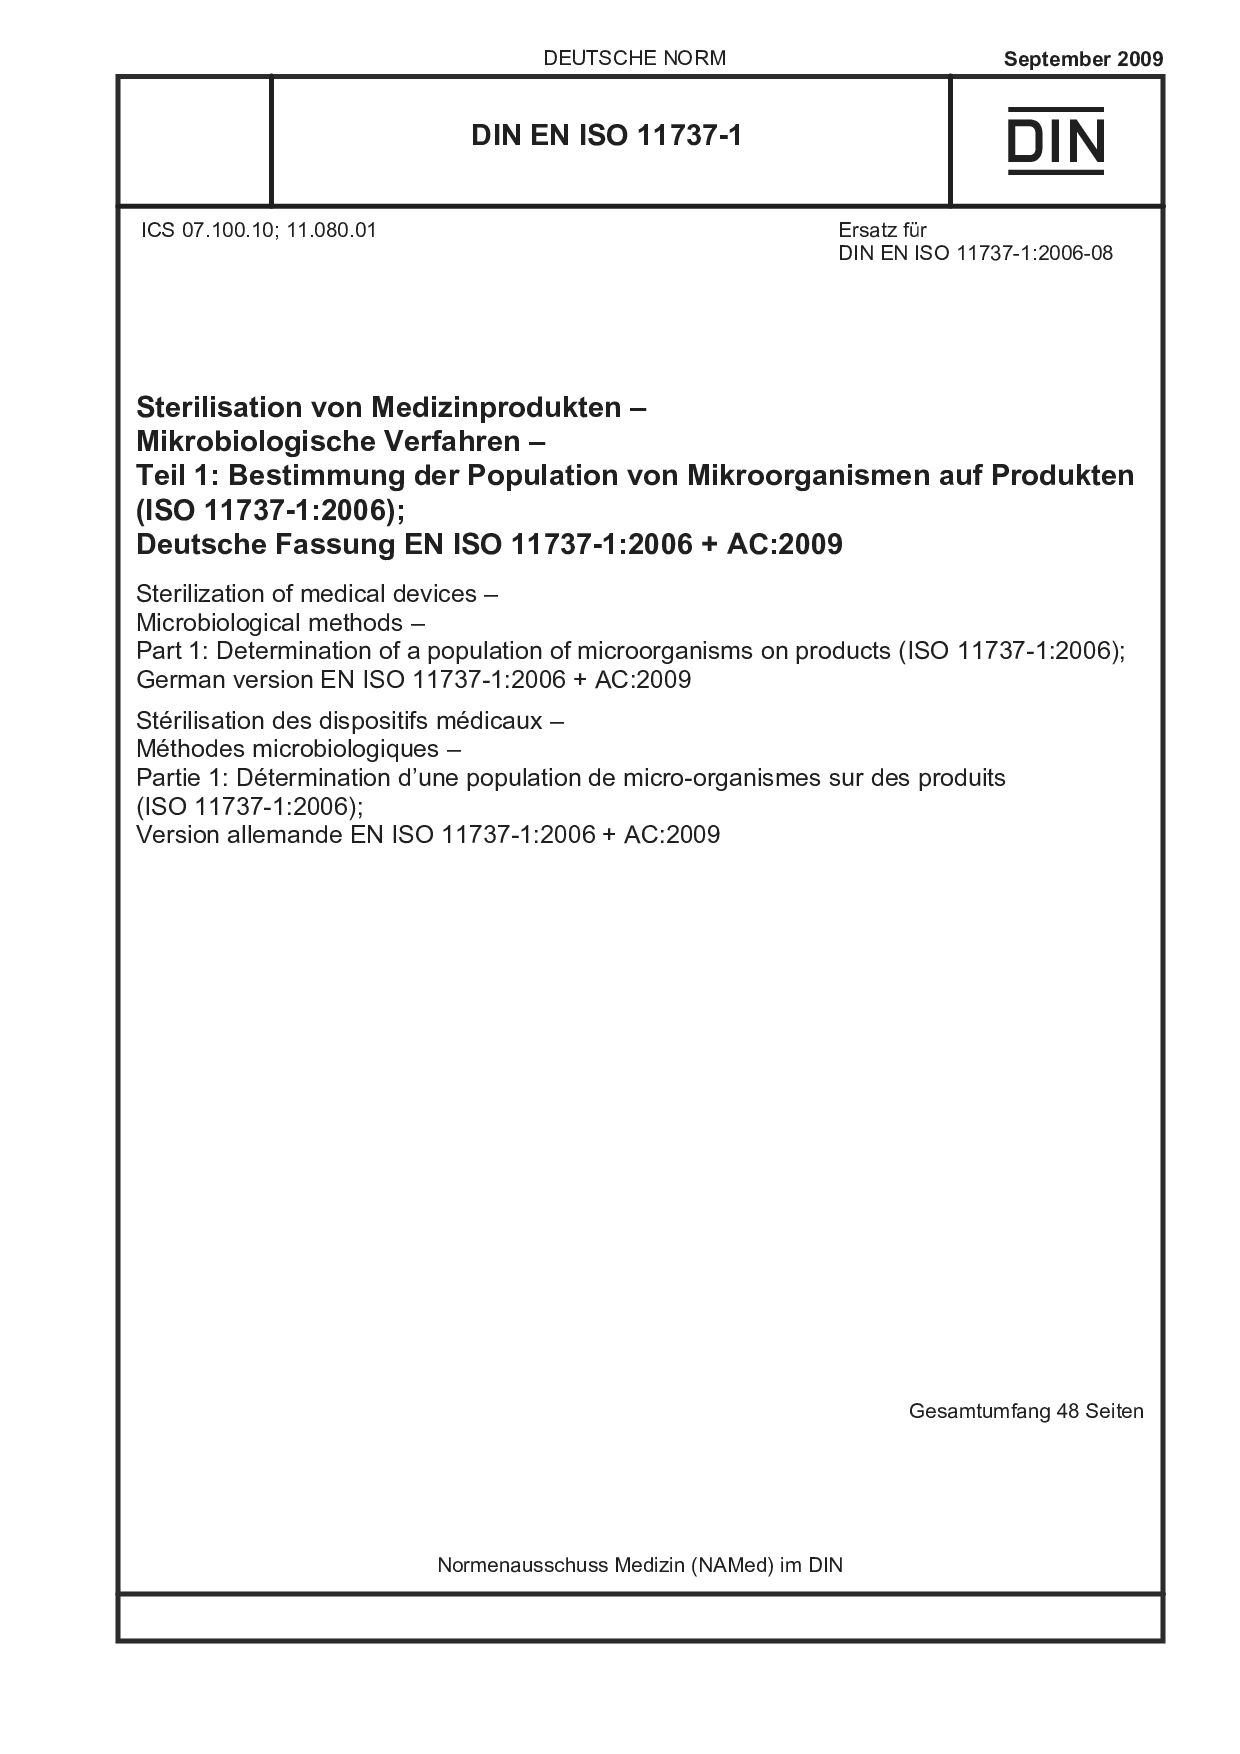 DIN EN ISO 11737-1:2009